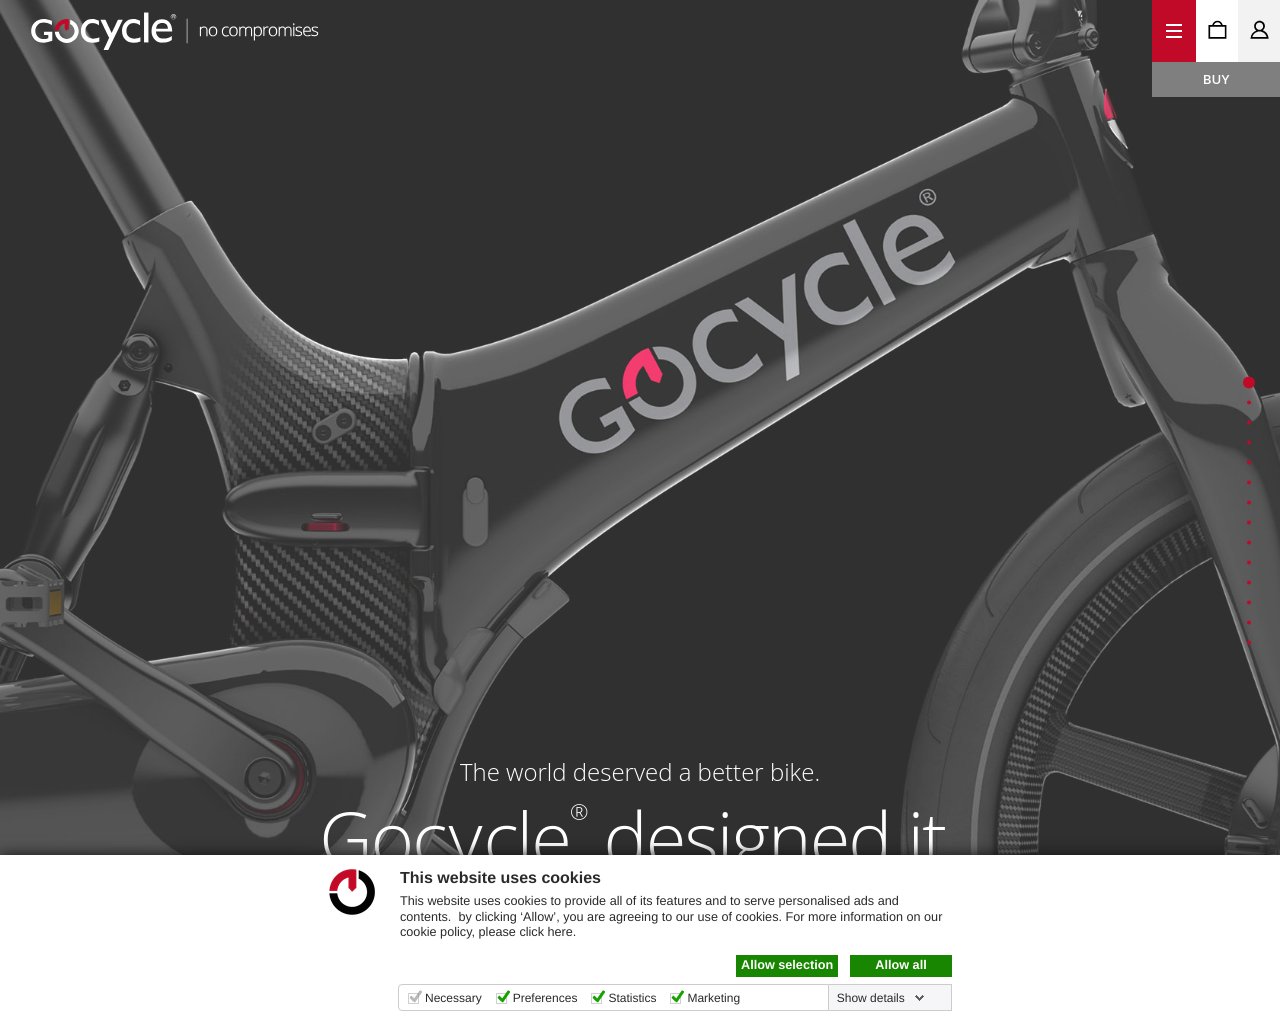 gocycle.com